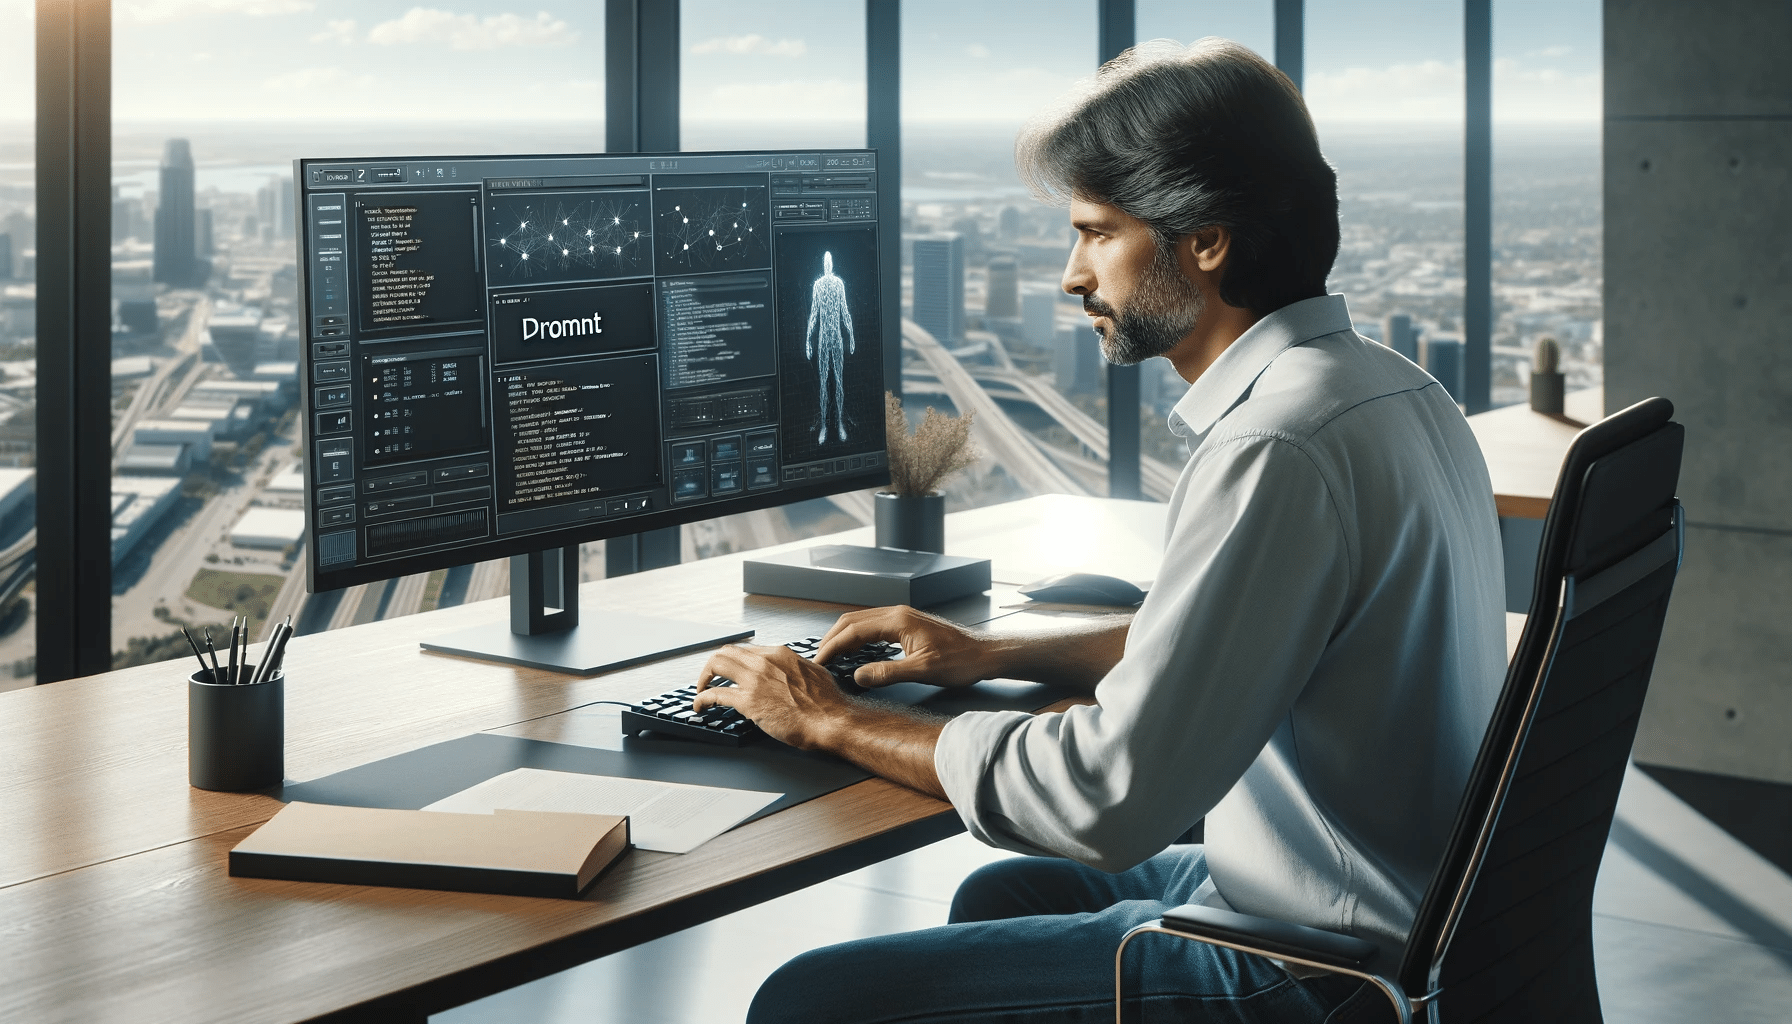 Un homme d'âge moyen travaillant comme ingénieur de prompt, tapant sur son clavier dans un bureau lumineux, avec un moniteur large affichant une interface de génération de contenu IA.